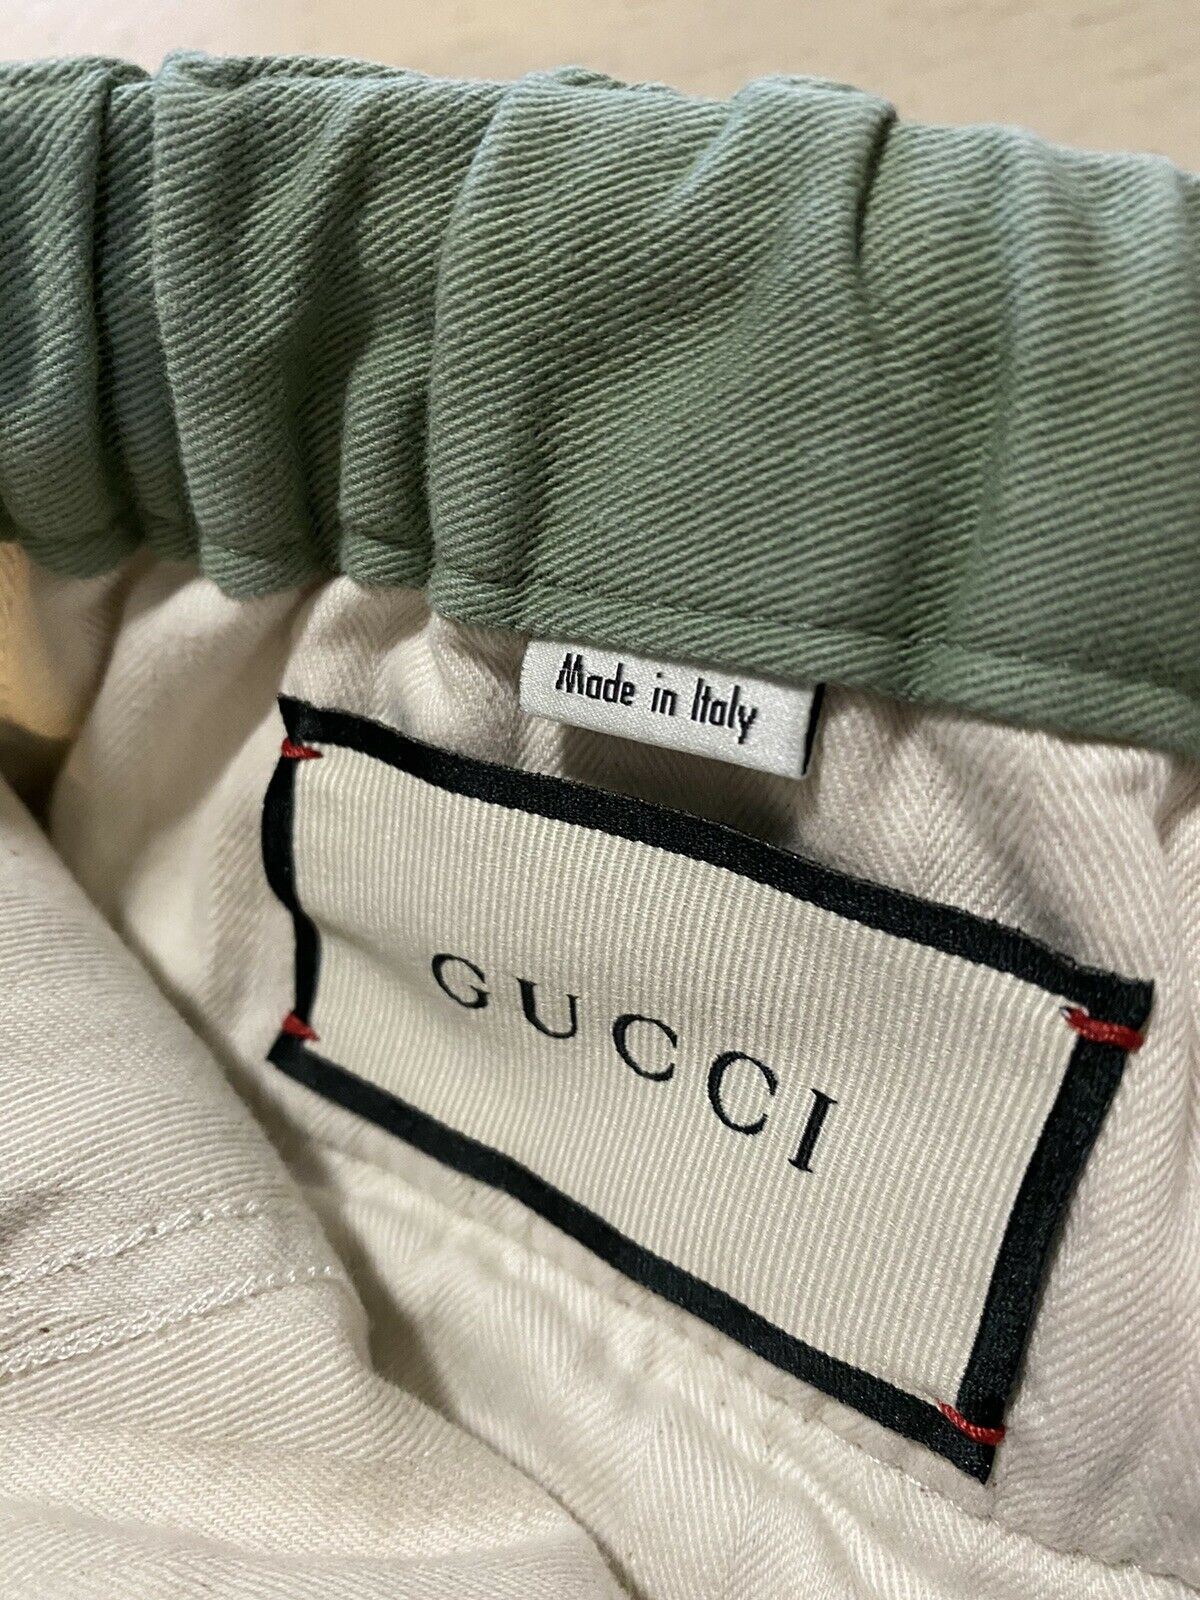 Новые мужские джеггинсы Gucci за 1200 долларов, зеленые 36 США (52 ЕС), сделано в Италии